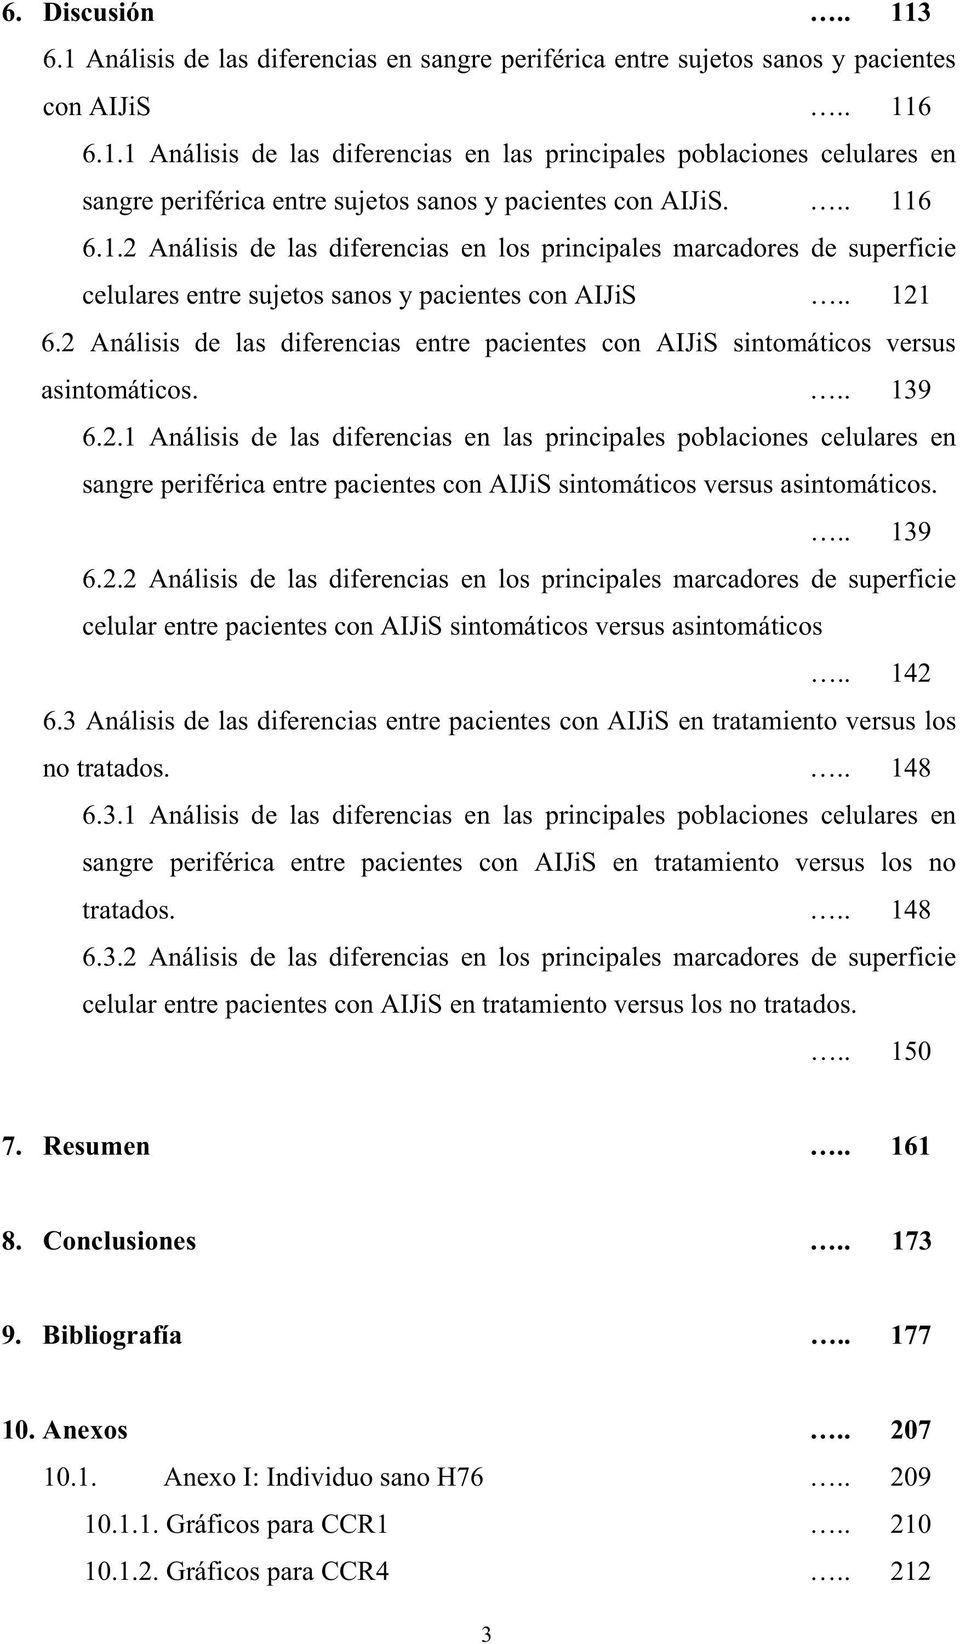 2 Análisis de las diferencias entre pacientes con AIJiS sintomáticos versus asintomáticos... 139 6.2.1 Análisis de las diferencias en las principales poblaciones celulares en sangre periférica entre pacientes con AIJiS sintomáticos versus asintomáticos.